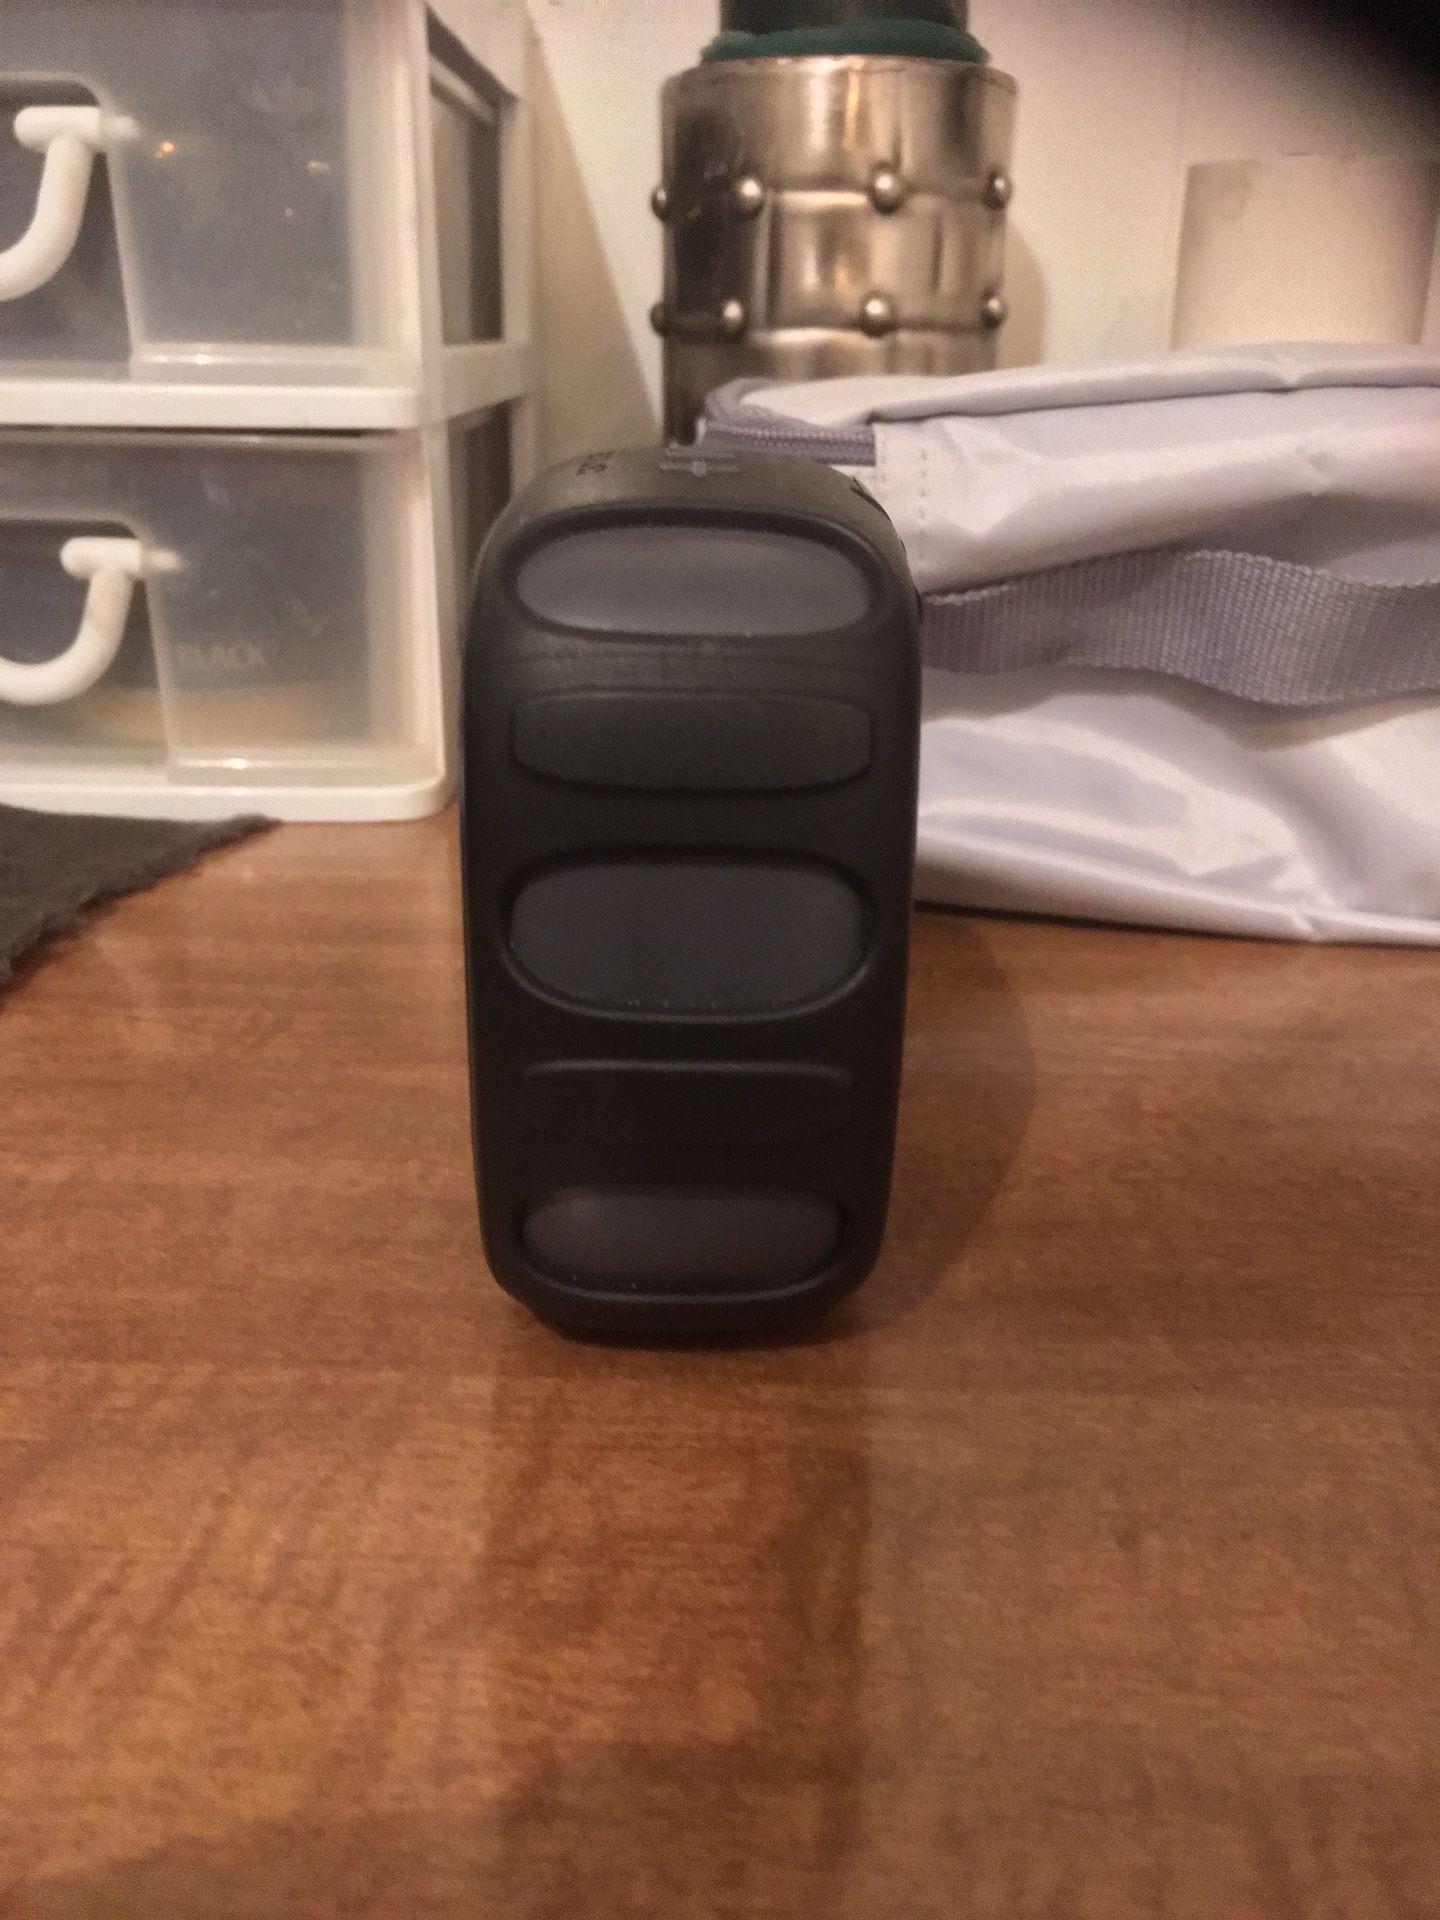 2 Bluetooth speakers